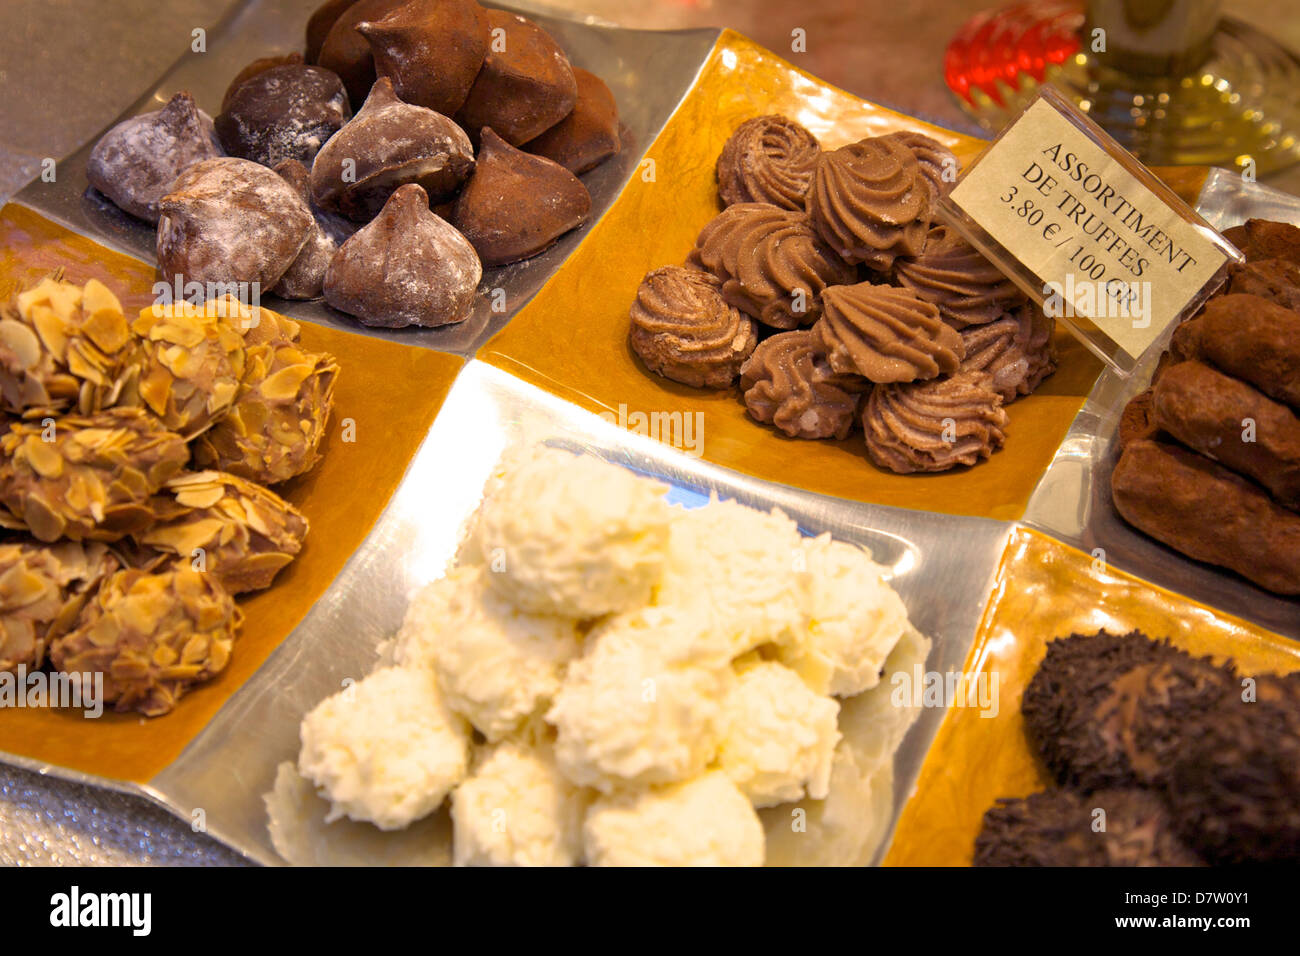 Trufas de chocolate en una tienda de dulces, Bruselas, Bélgica Foto de stock